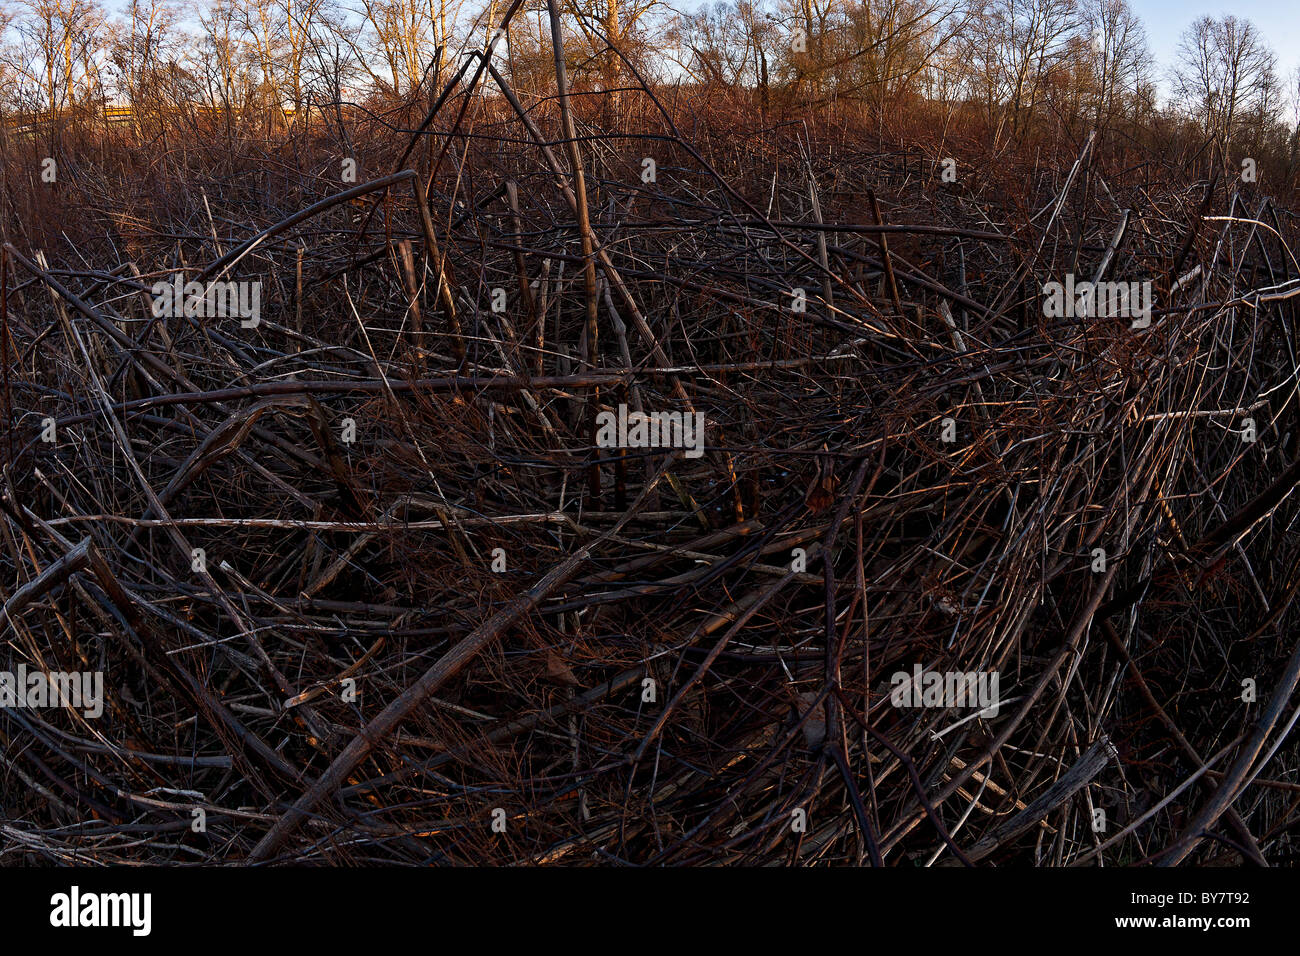 A natural area overgrown with the Japanese knotweed (Polygonum cuspidatum) . Site naturel envahi par la renouée du Japon. France Stock Photo